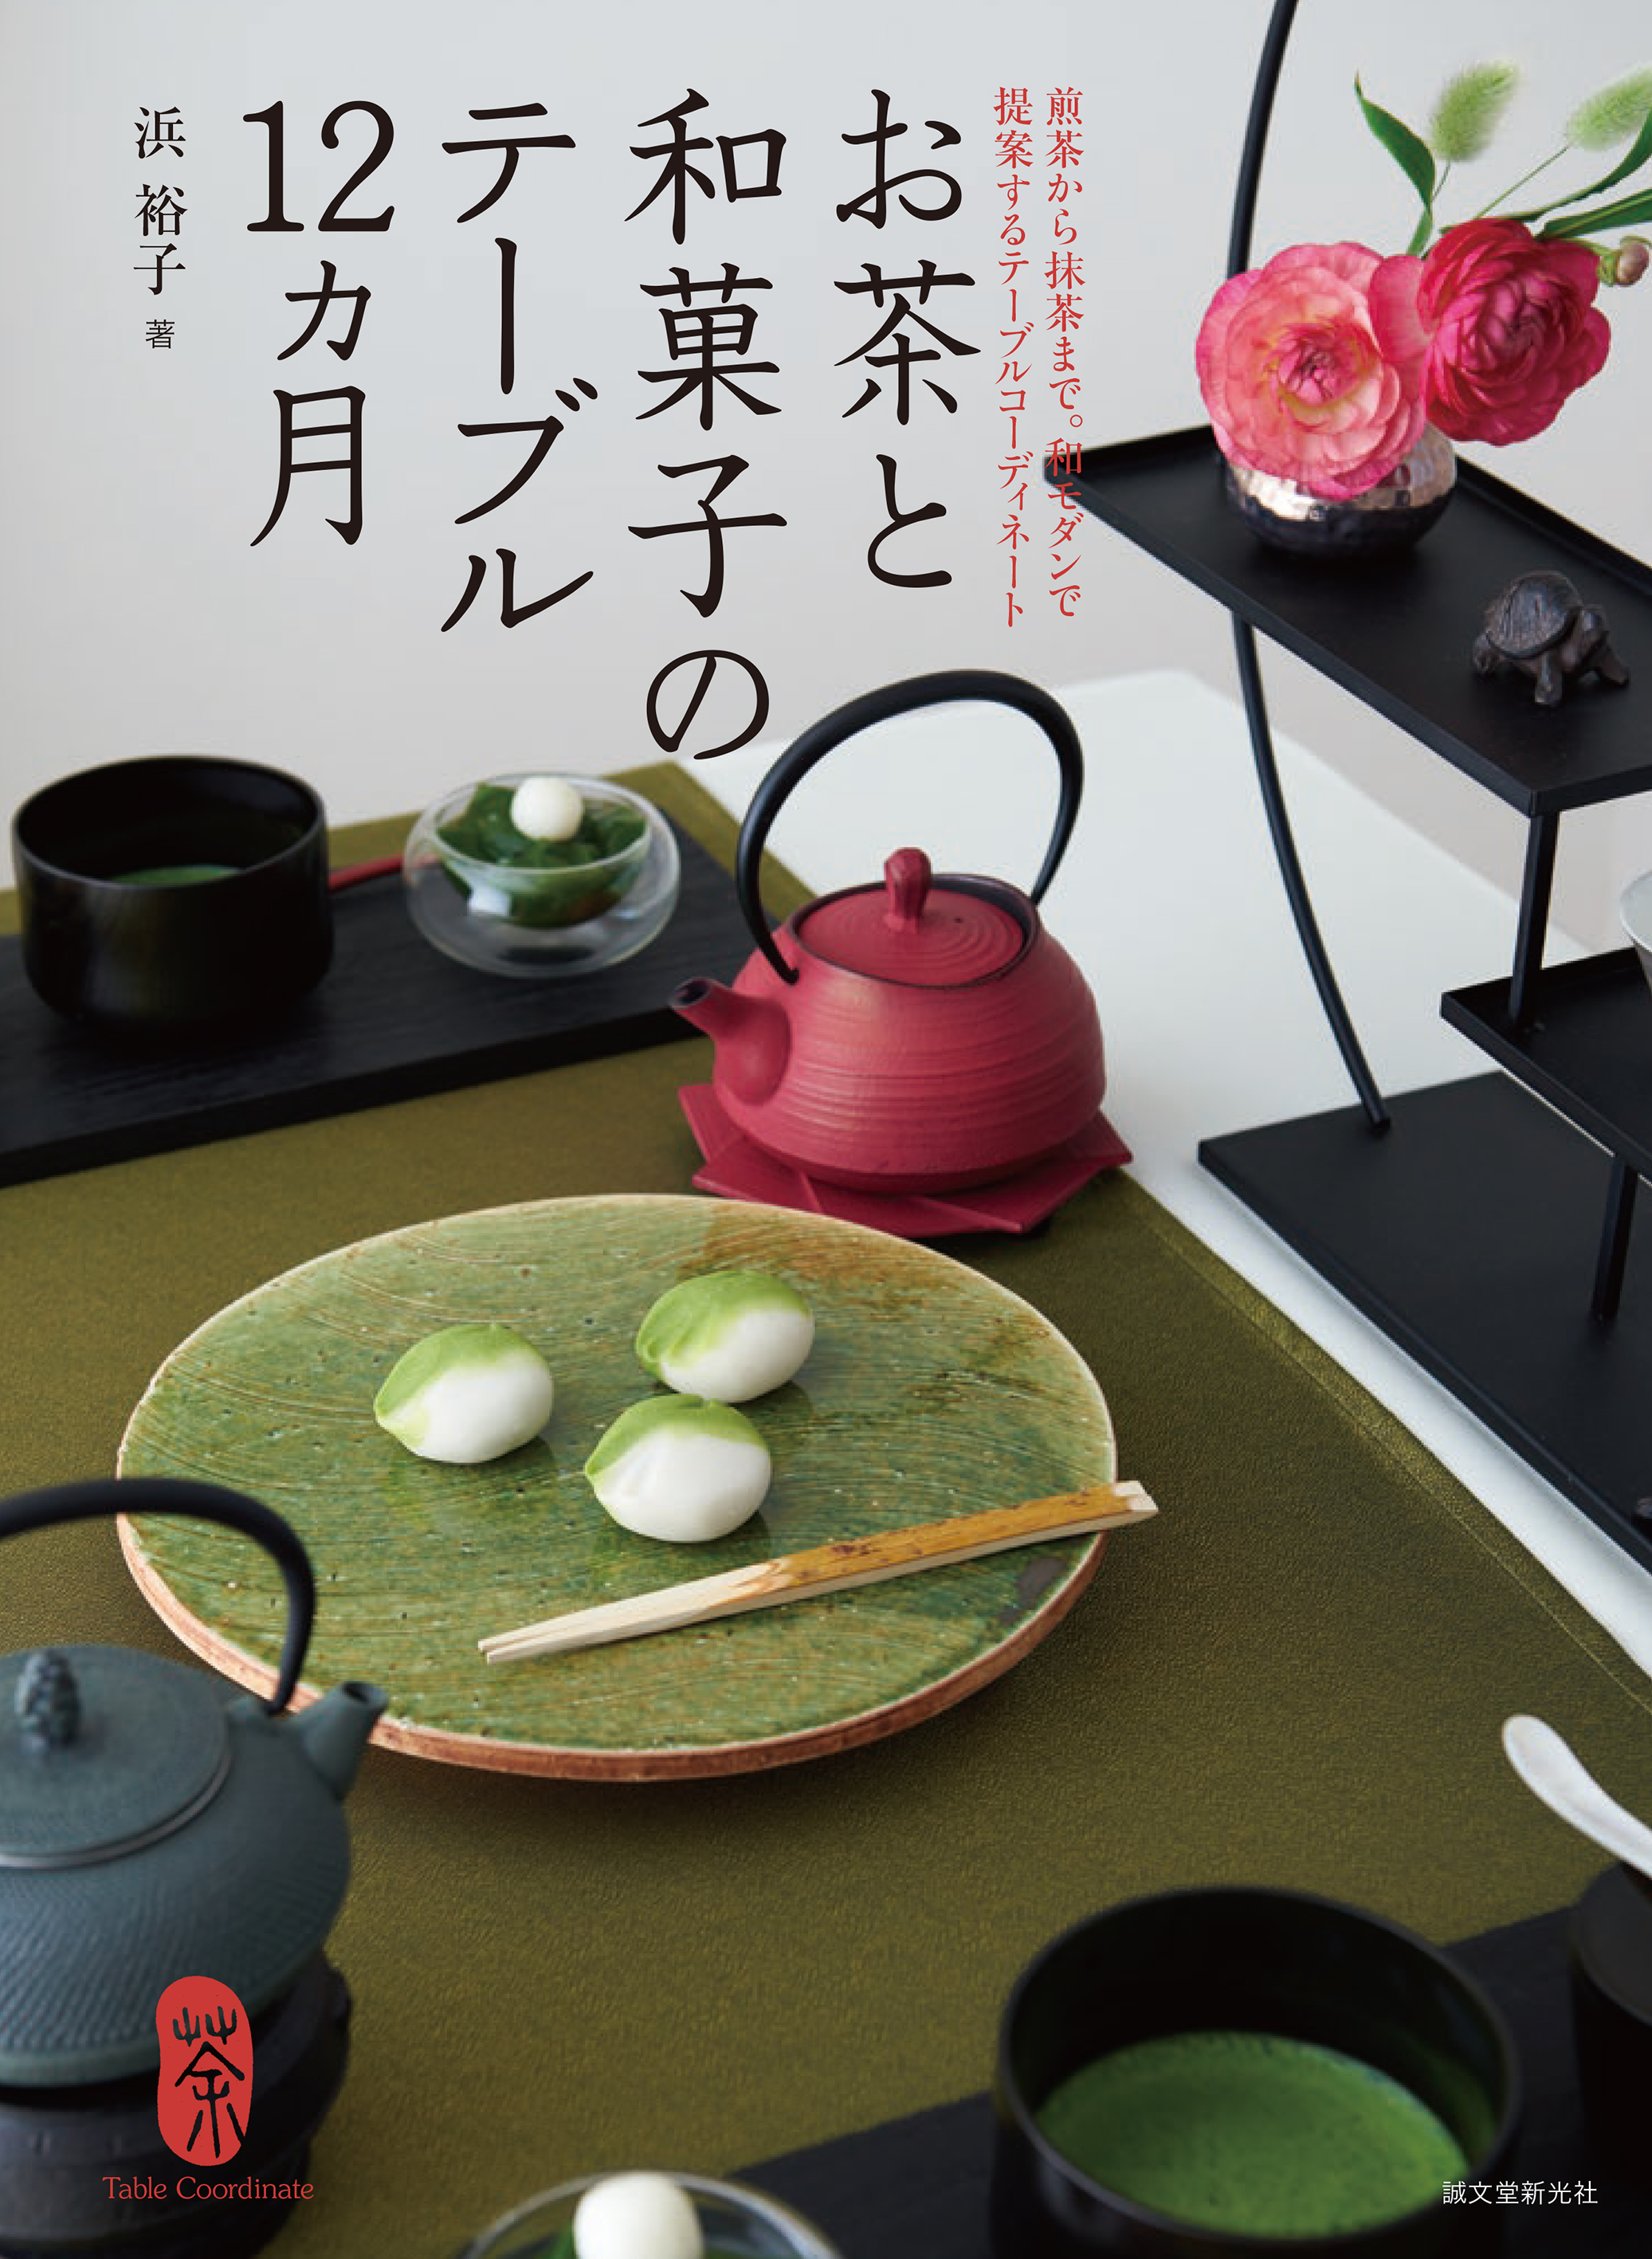 日本茶 の魅力が満載 歳時記や季節の行事をテーマに楽しめる テーブルコーディネートを紹介 株式会社誠文堂新光社のプレスリリース